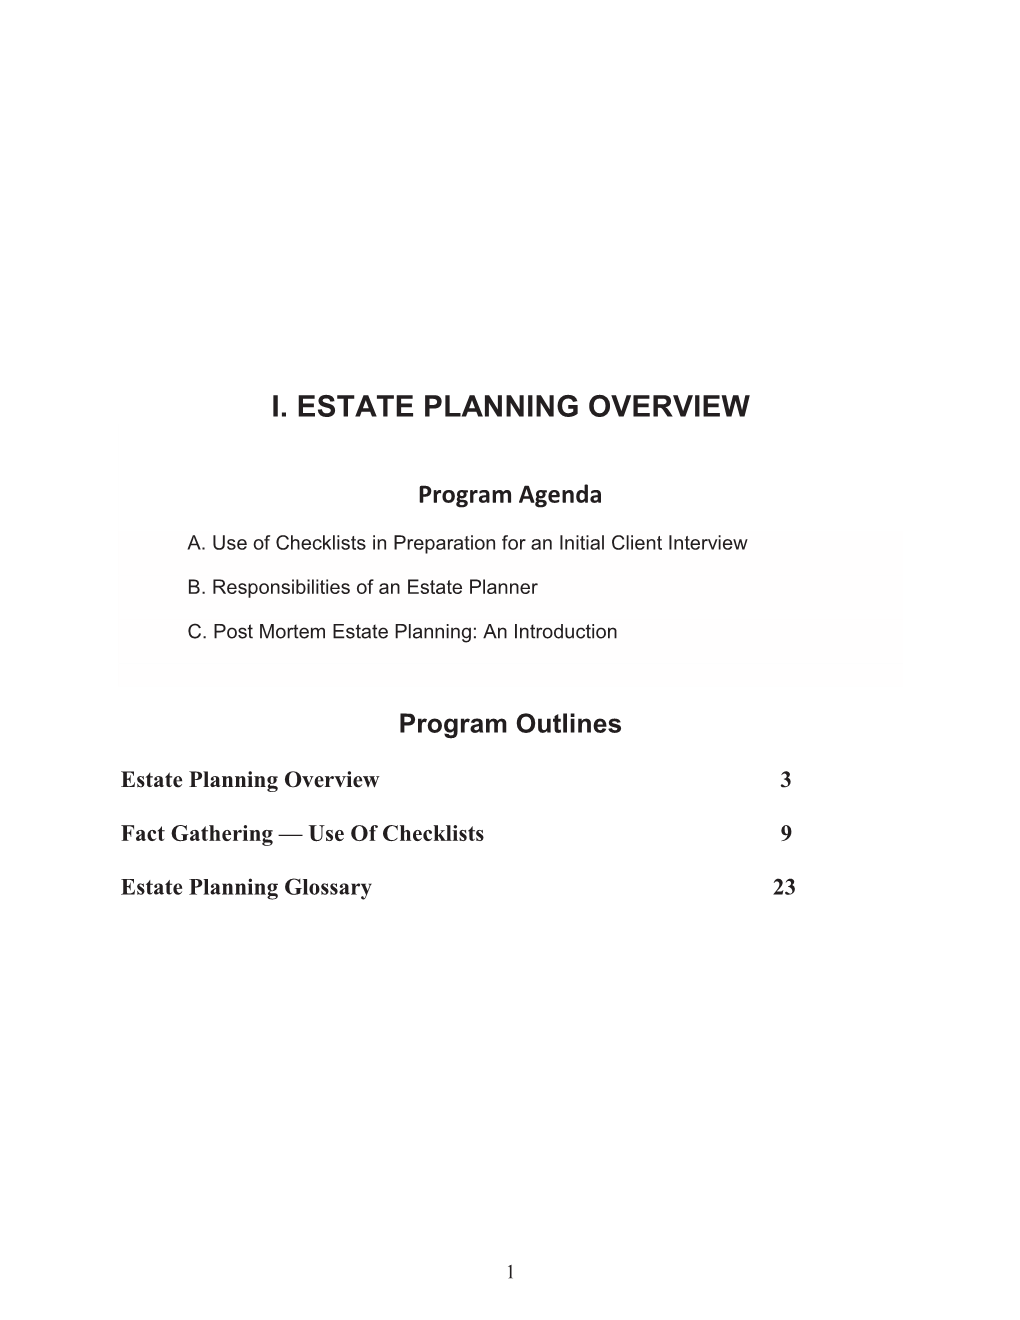 I. Estate Planning Overview